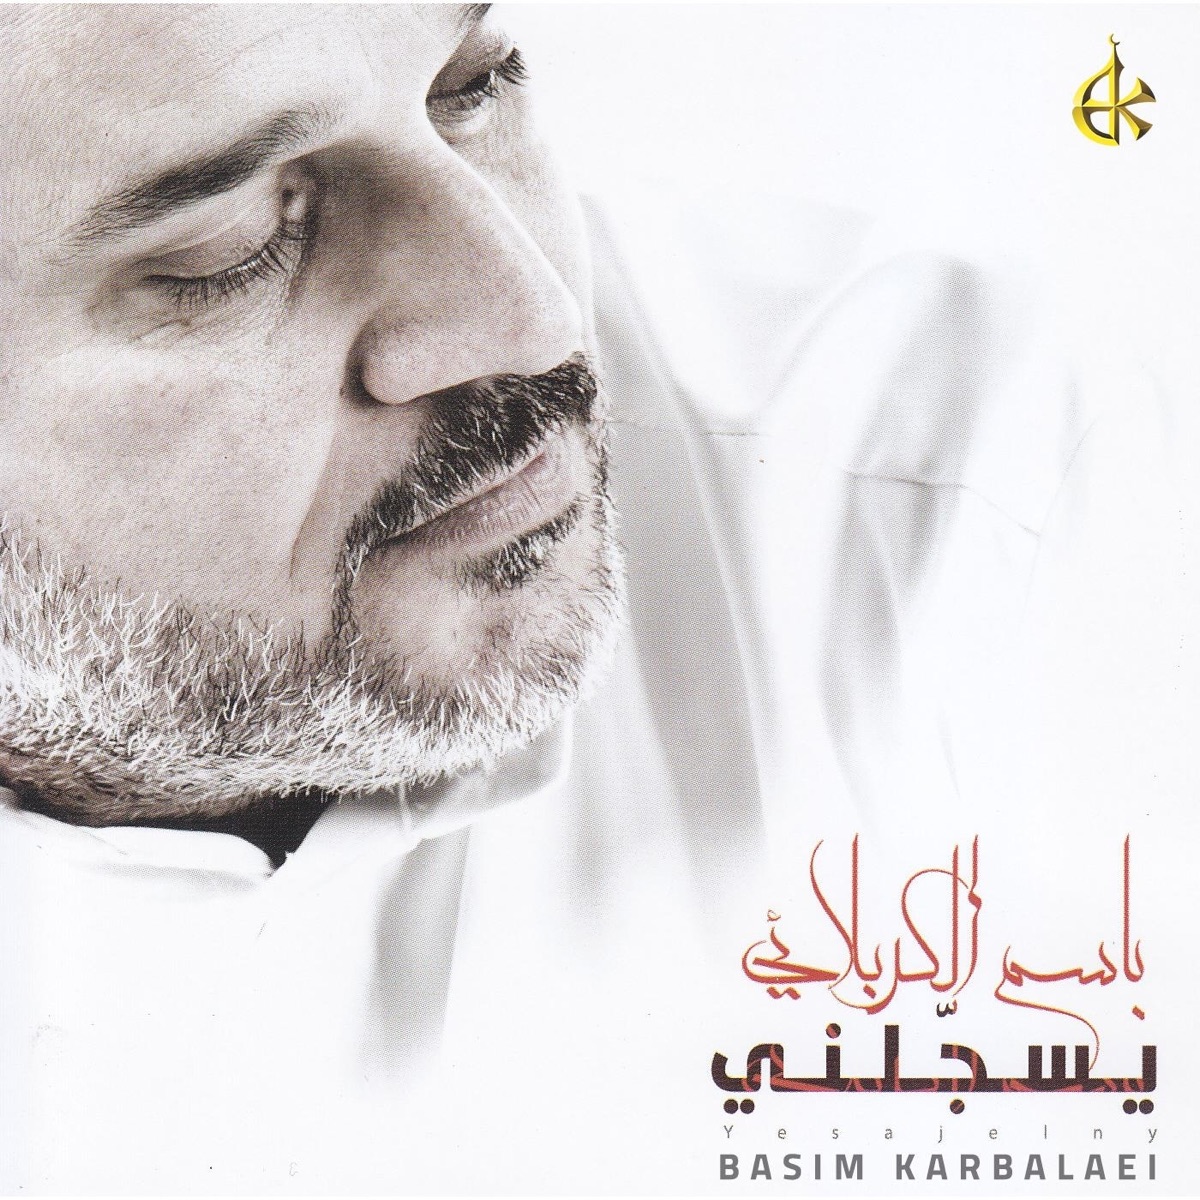 باسم الكربلائي 1443 - Album by Basim Karbalaei - Apple Music